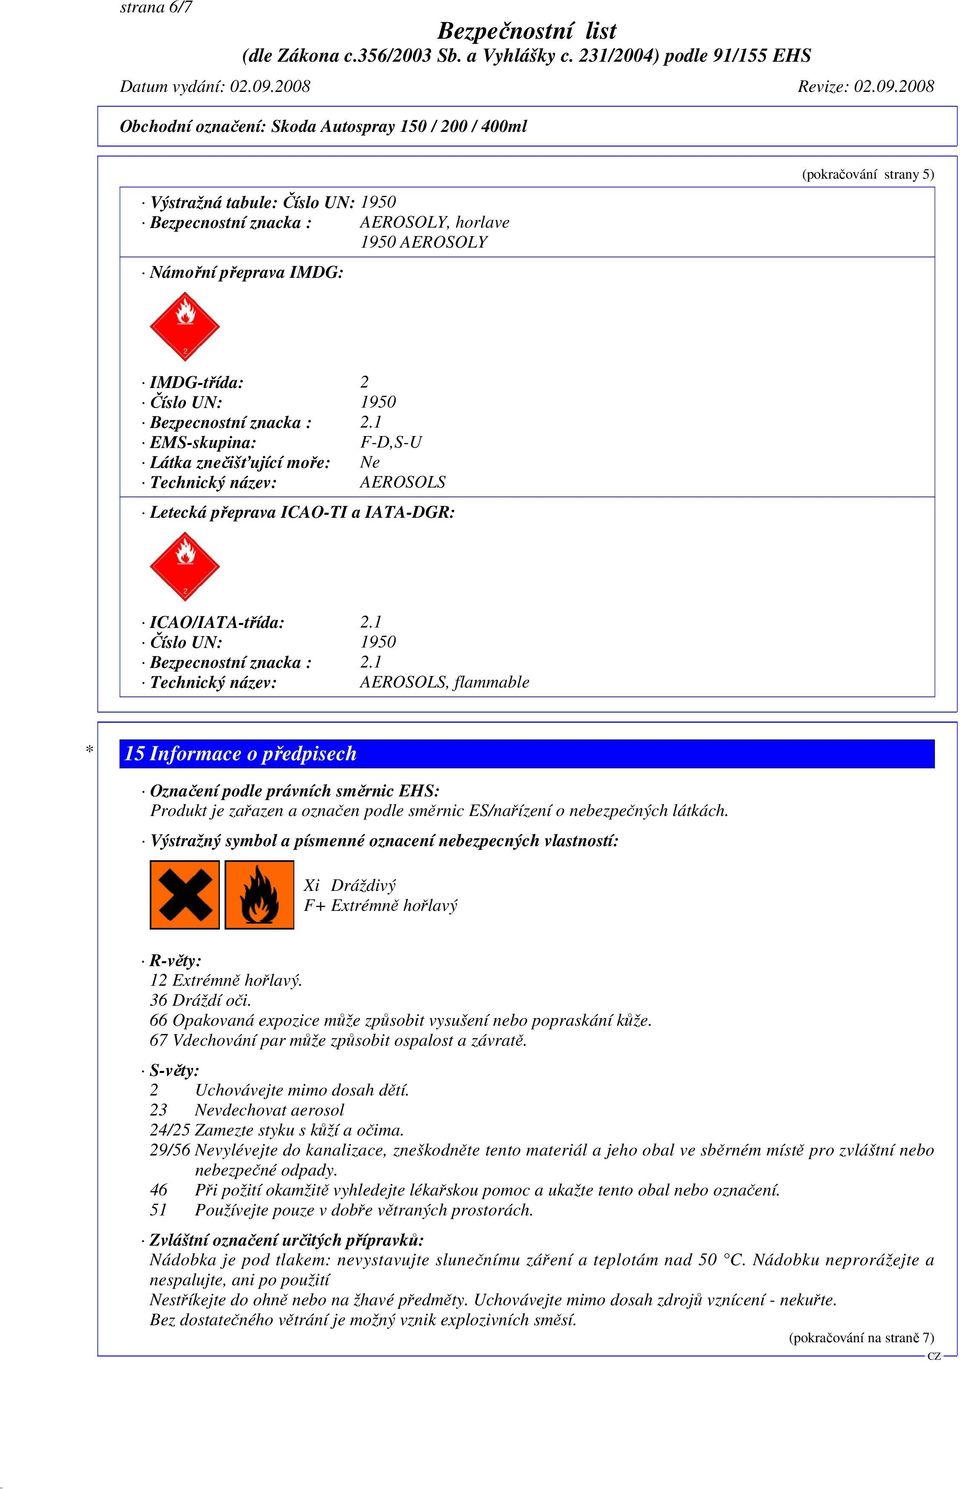 1 Technický název: AEROSOLS, flammable * 15 Informace o předpisech Označení podle právních směrnic EHS: Produkt je zařazen a označen podle směrnic ES/nařízení o nebezpečných látkách.